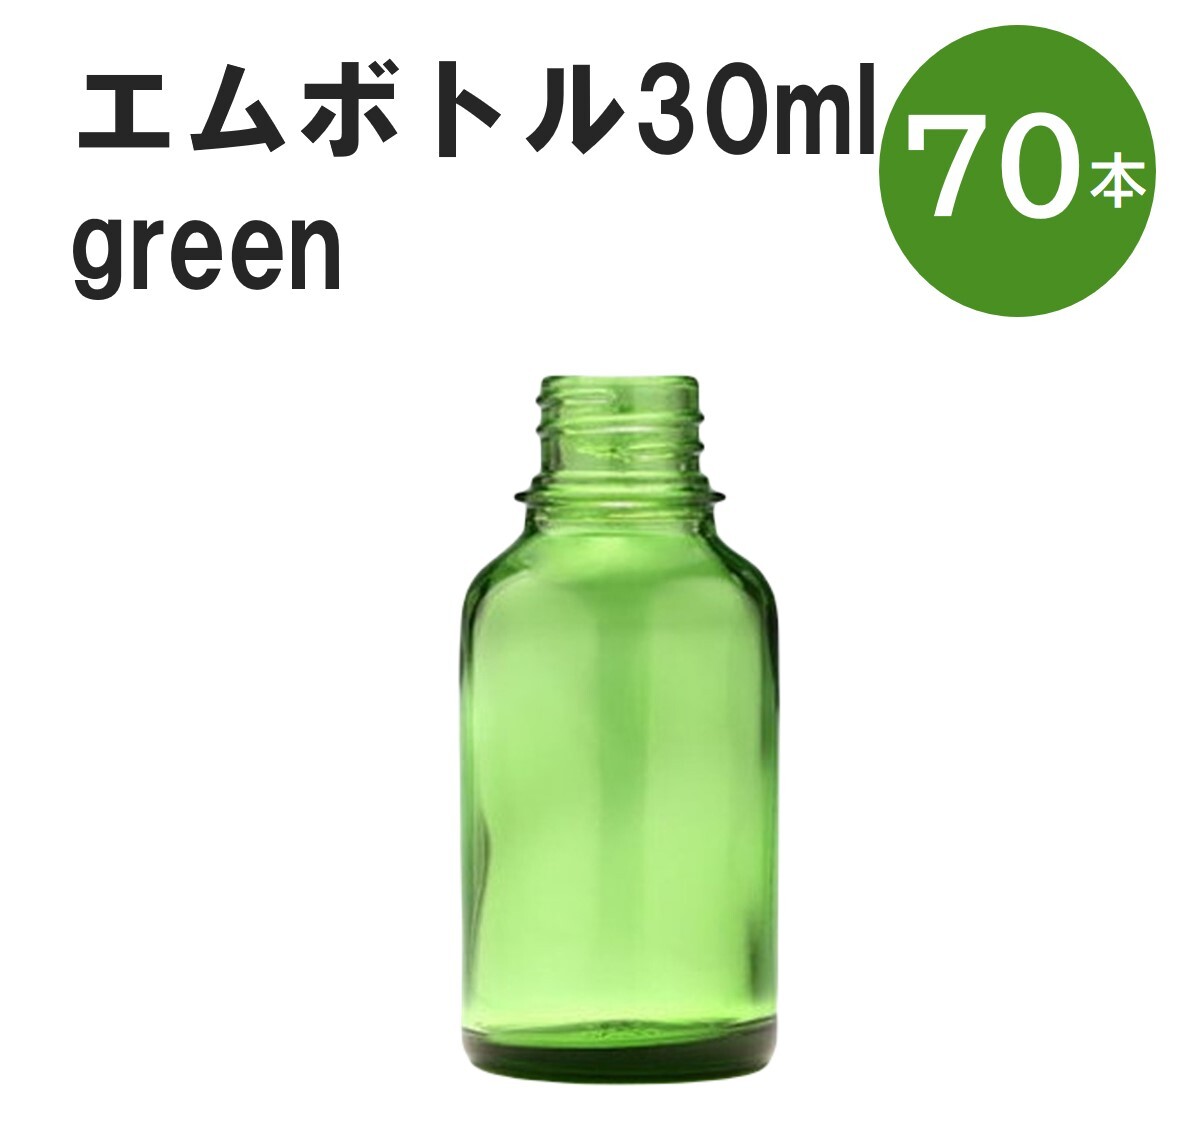 「グリーン エムボトルNo.30G 30ml キャップ アルミスクリューキャップ 70本 」 遮光ガラス瓶 小分け 詰め替え用 遮光瓶 詰め替え容器 空容器 保存用アロマ 手作りコスメ 精油 詰め替え 保存容器 ガラス瓶 肩が丸いシンプルなガラス瓶です。手作りコスメやアロマオイルなどの詰め替えに。 きれいな色は誰からも愛される定番色です。エッセンシャルオイルを入れるのに適した、遮光性のあるボトルです。 2